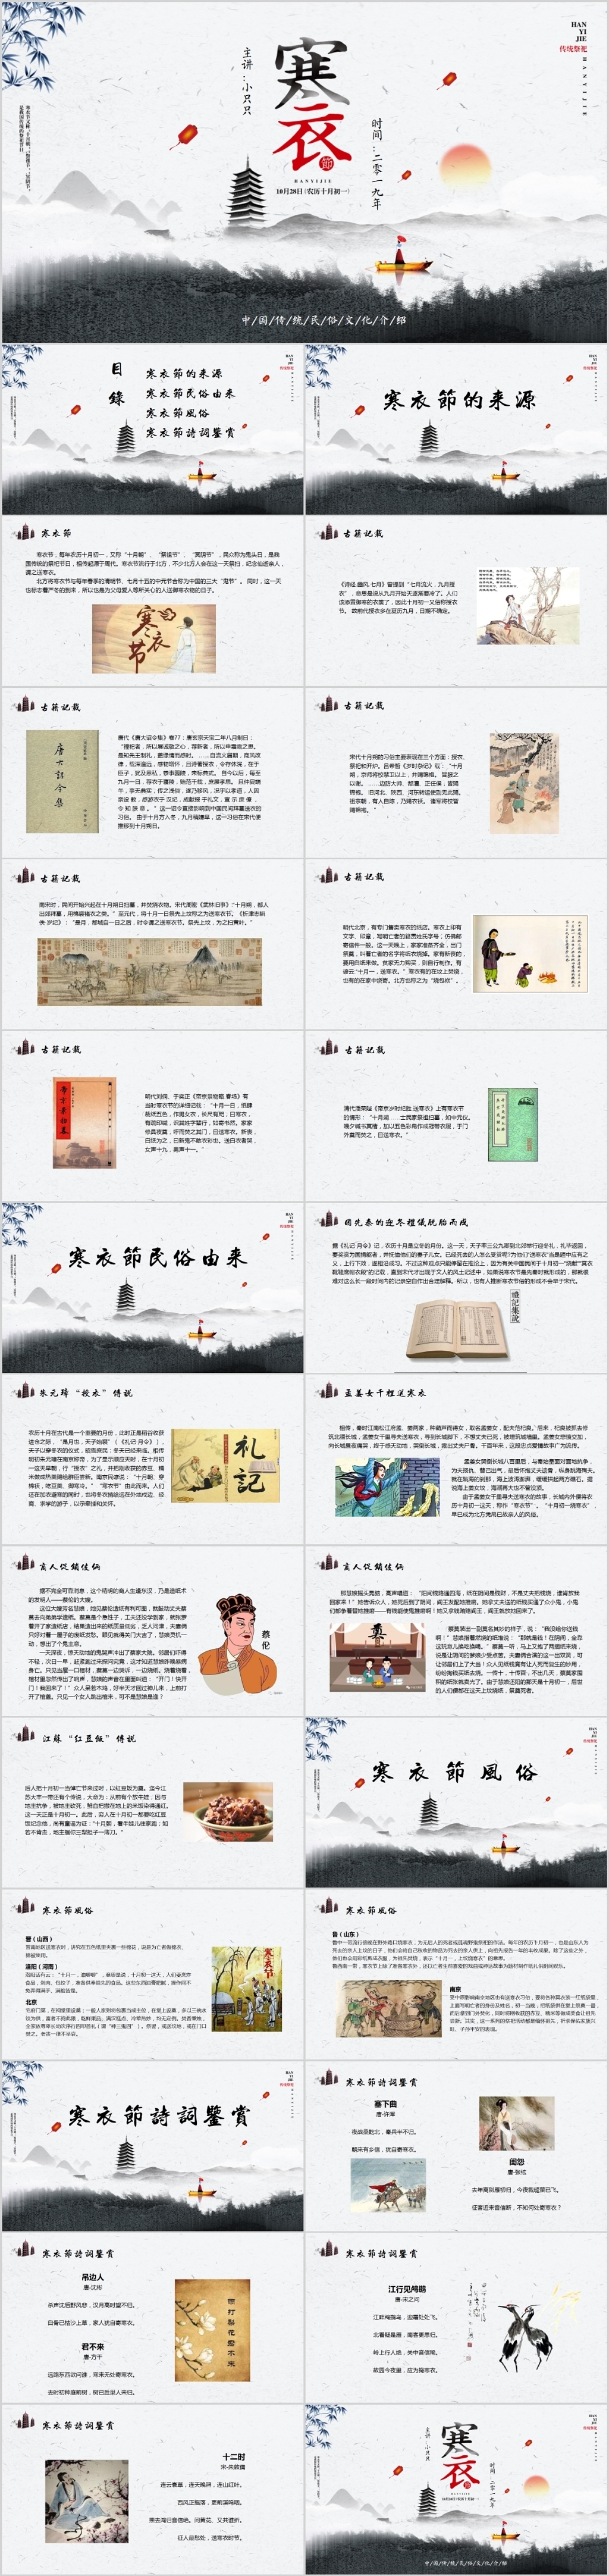 复古中国风中国传统文化寒衣节主题PPT模板